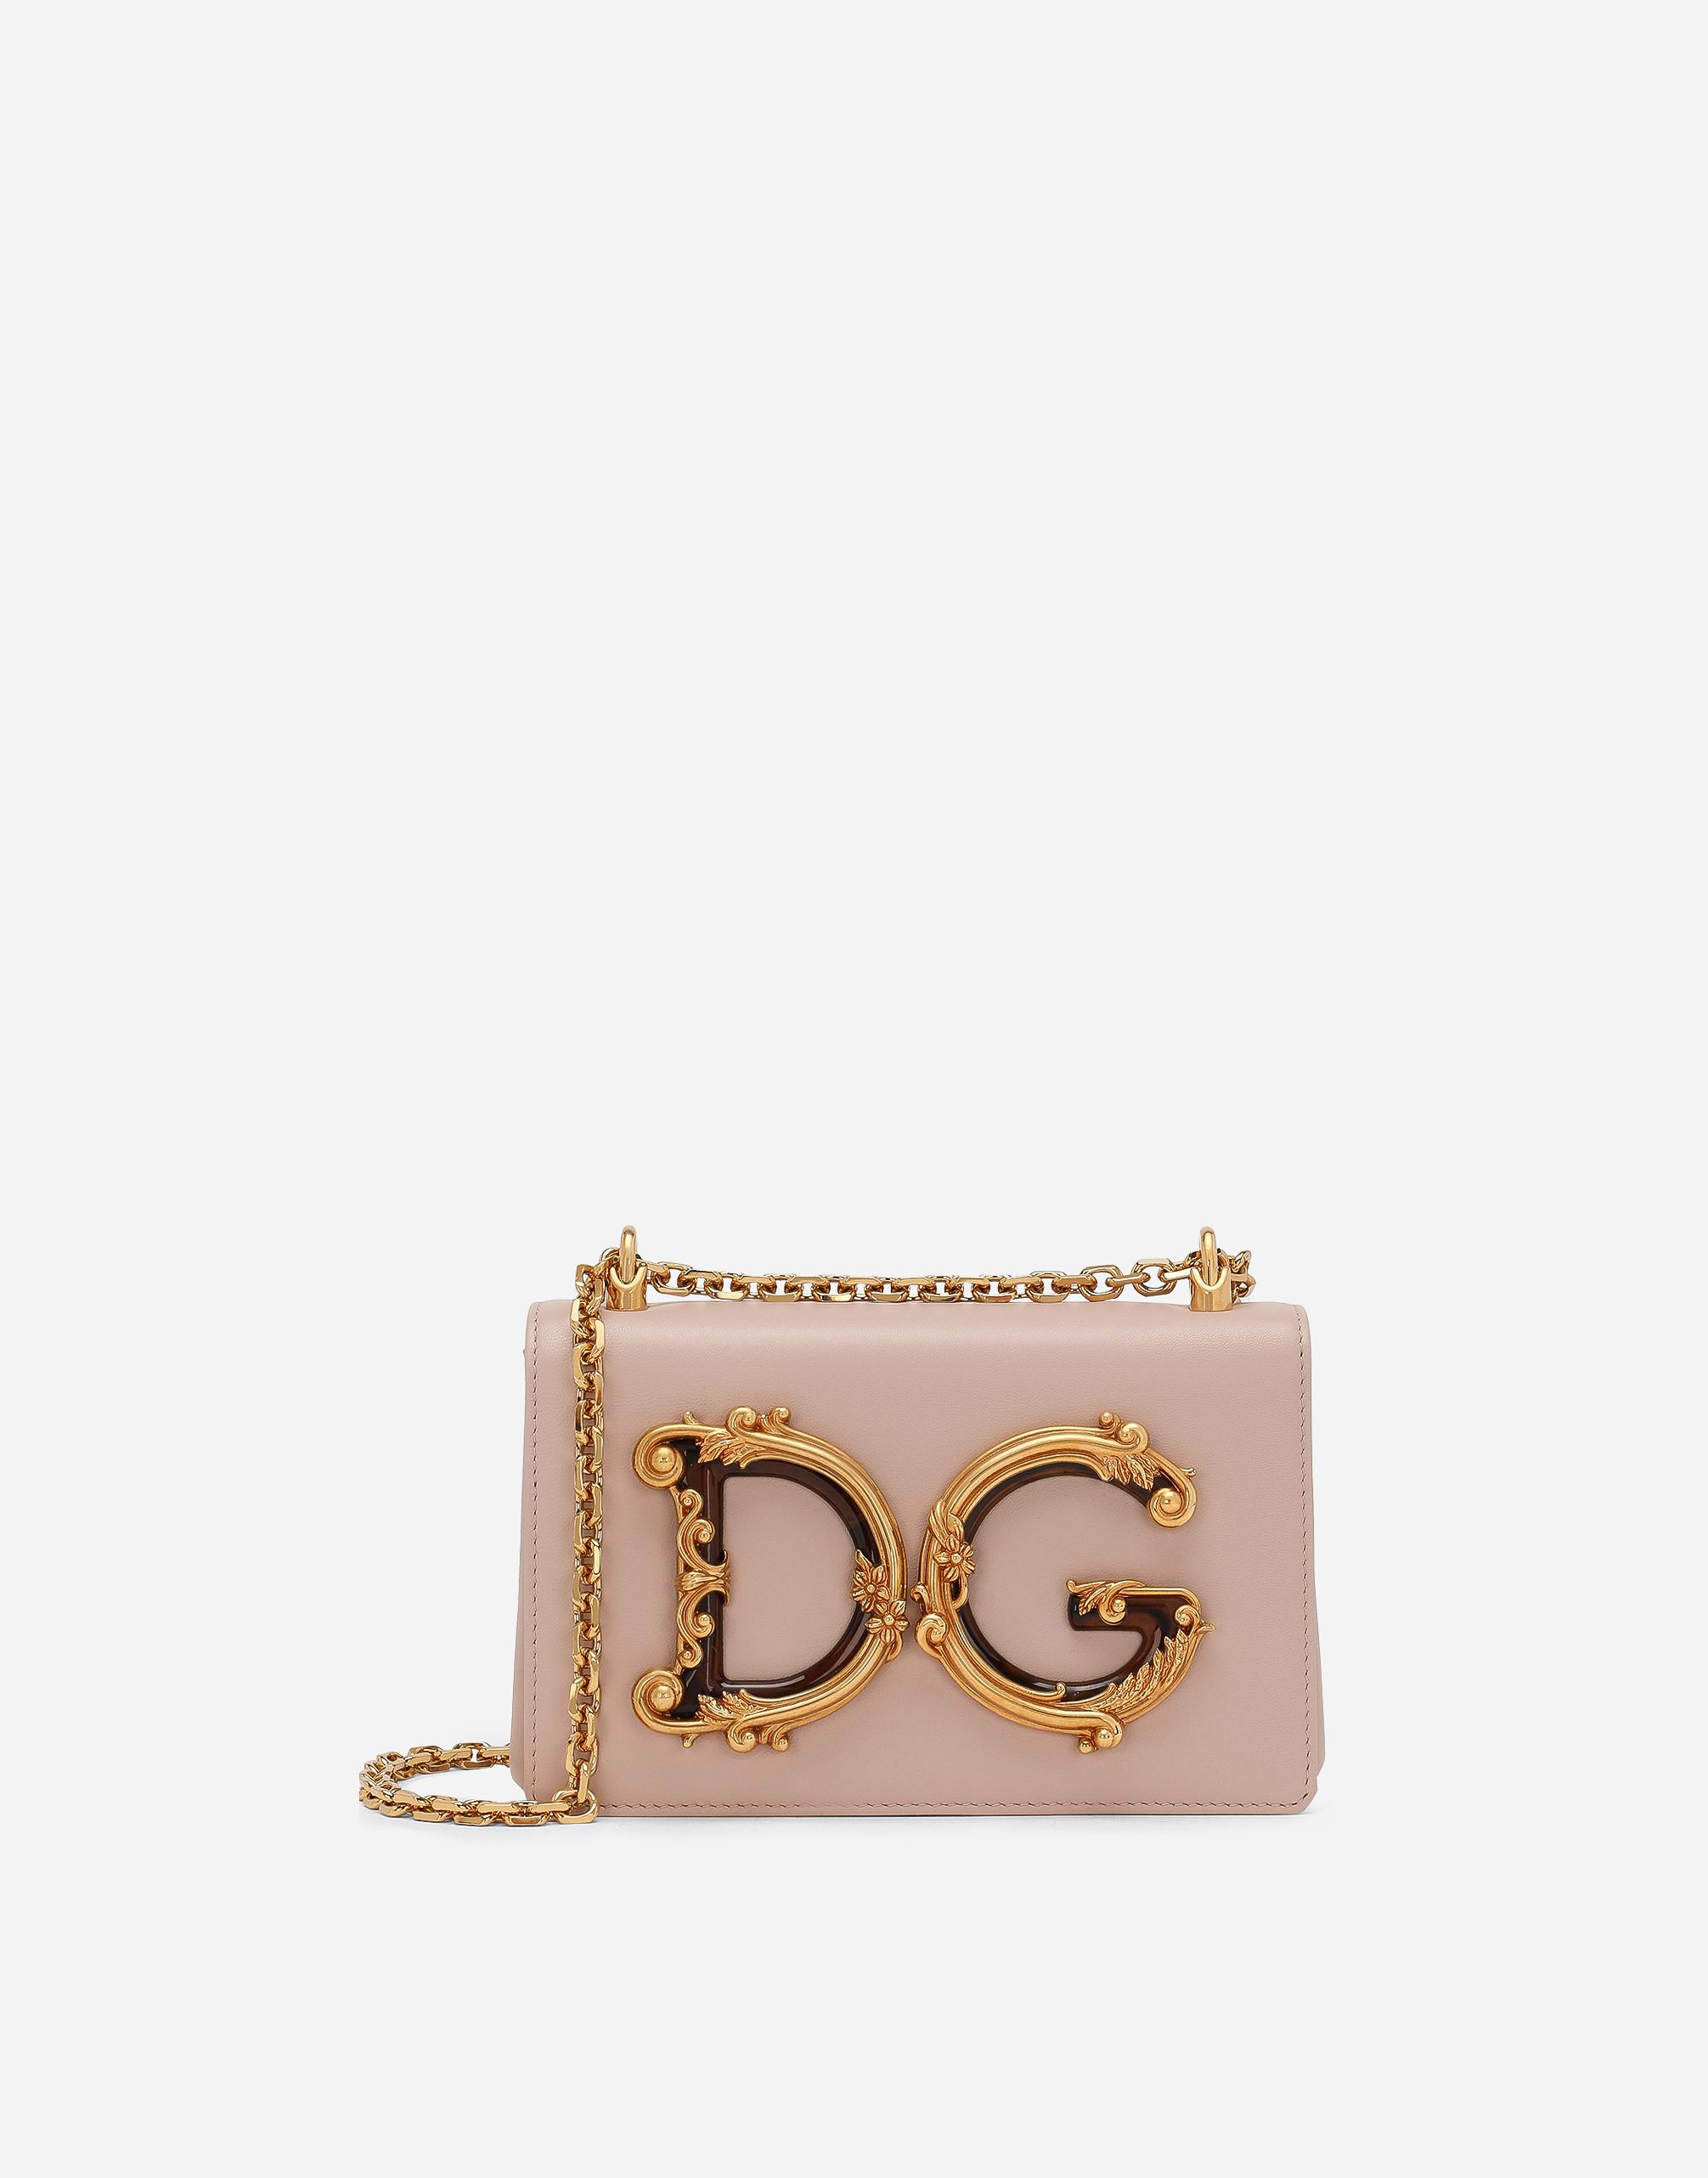 Nappa leather DG Girls shoulder bag in Pale Pink